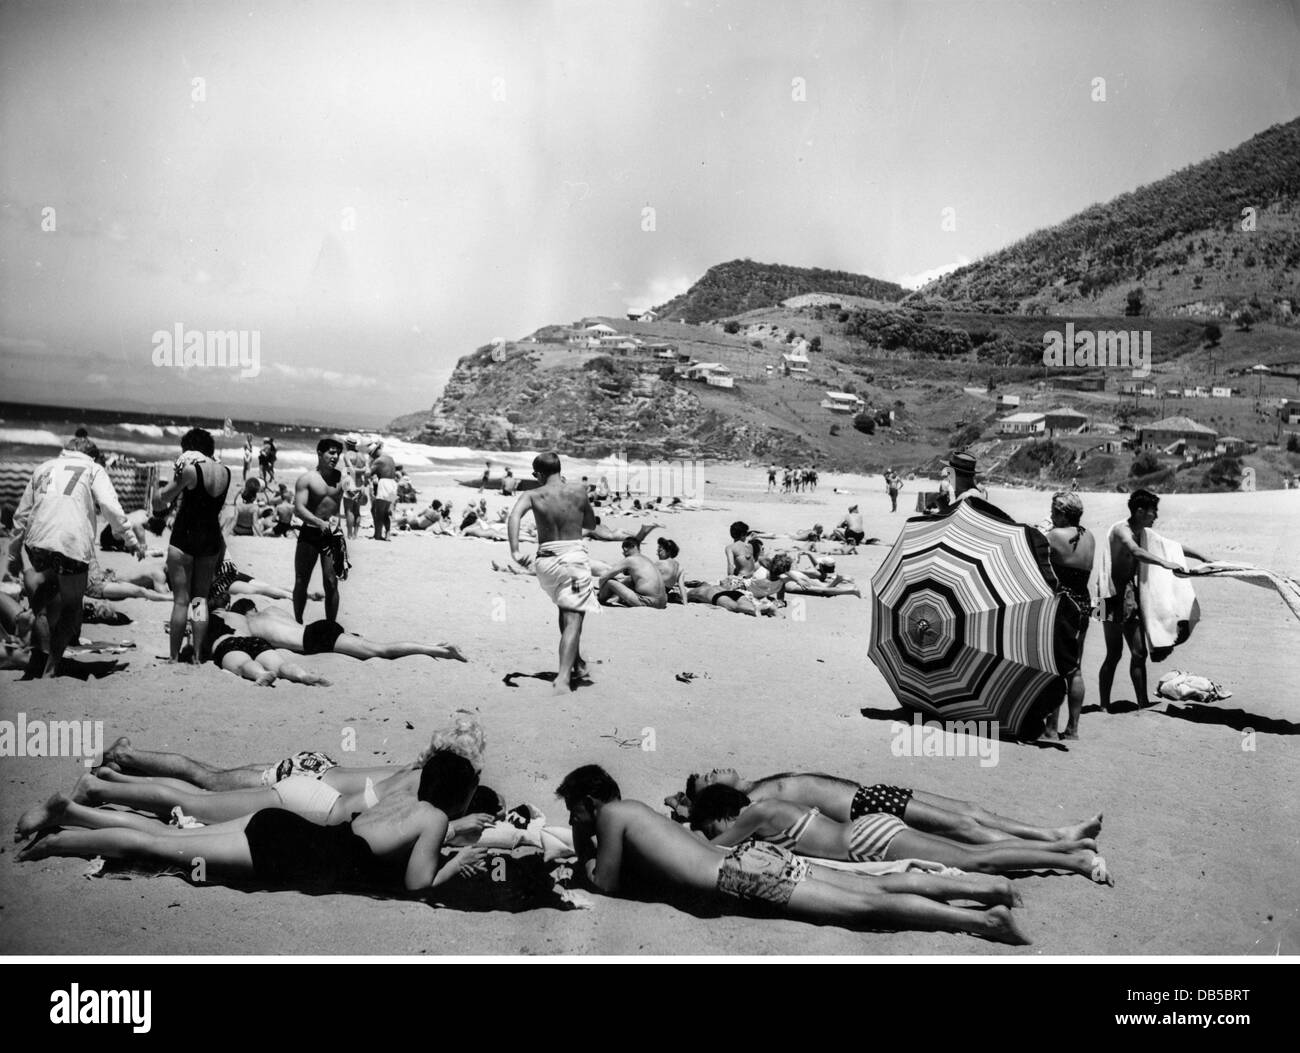 Géographie / Voyage, Australie, Stanwell Park, plages, personnes de baignade sur la plage, années 1960, droits-supplémentaires-Clearences-non disponible Banque D'Images